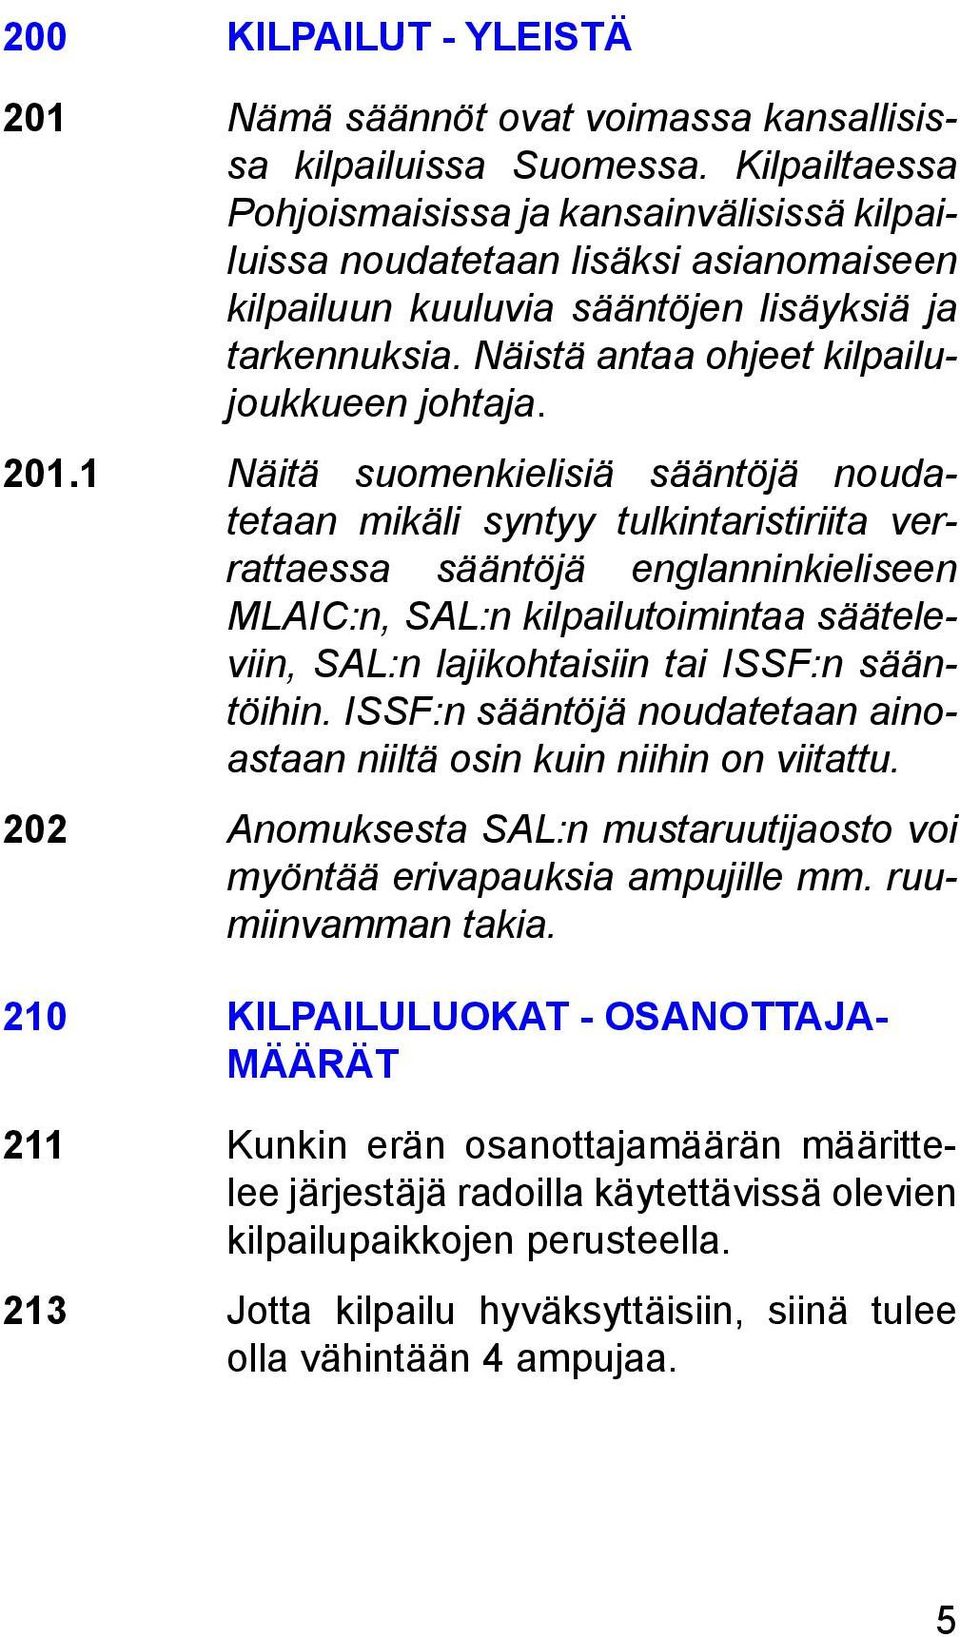 201.1 Näitä suomenkielisiä sääntöjä noudatetaan mikäli syntyy tulkintaristiriita verrattaessa sääntöjä englanninkieliseen MLAIC:n, SAL:n kilpailutoimintaa sääteleviin, SAL:n lajikohtaisiin tai ISSF:n